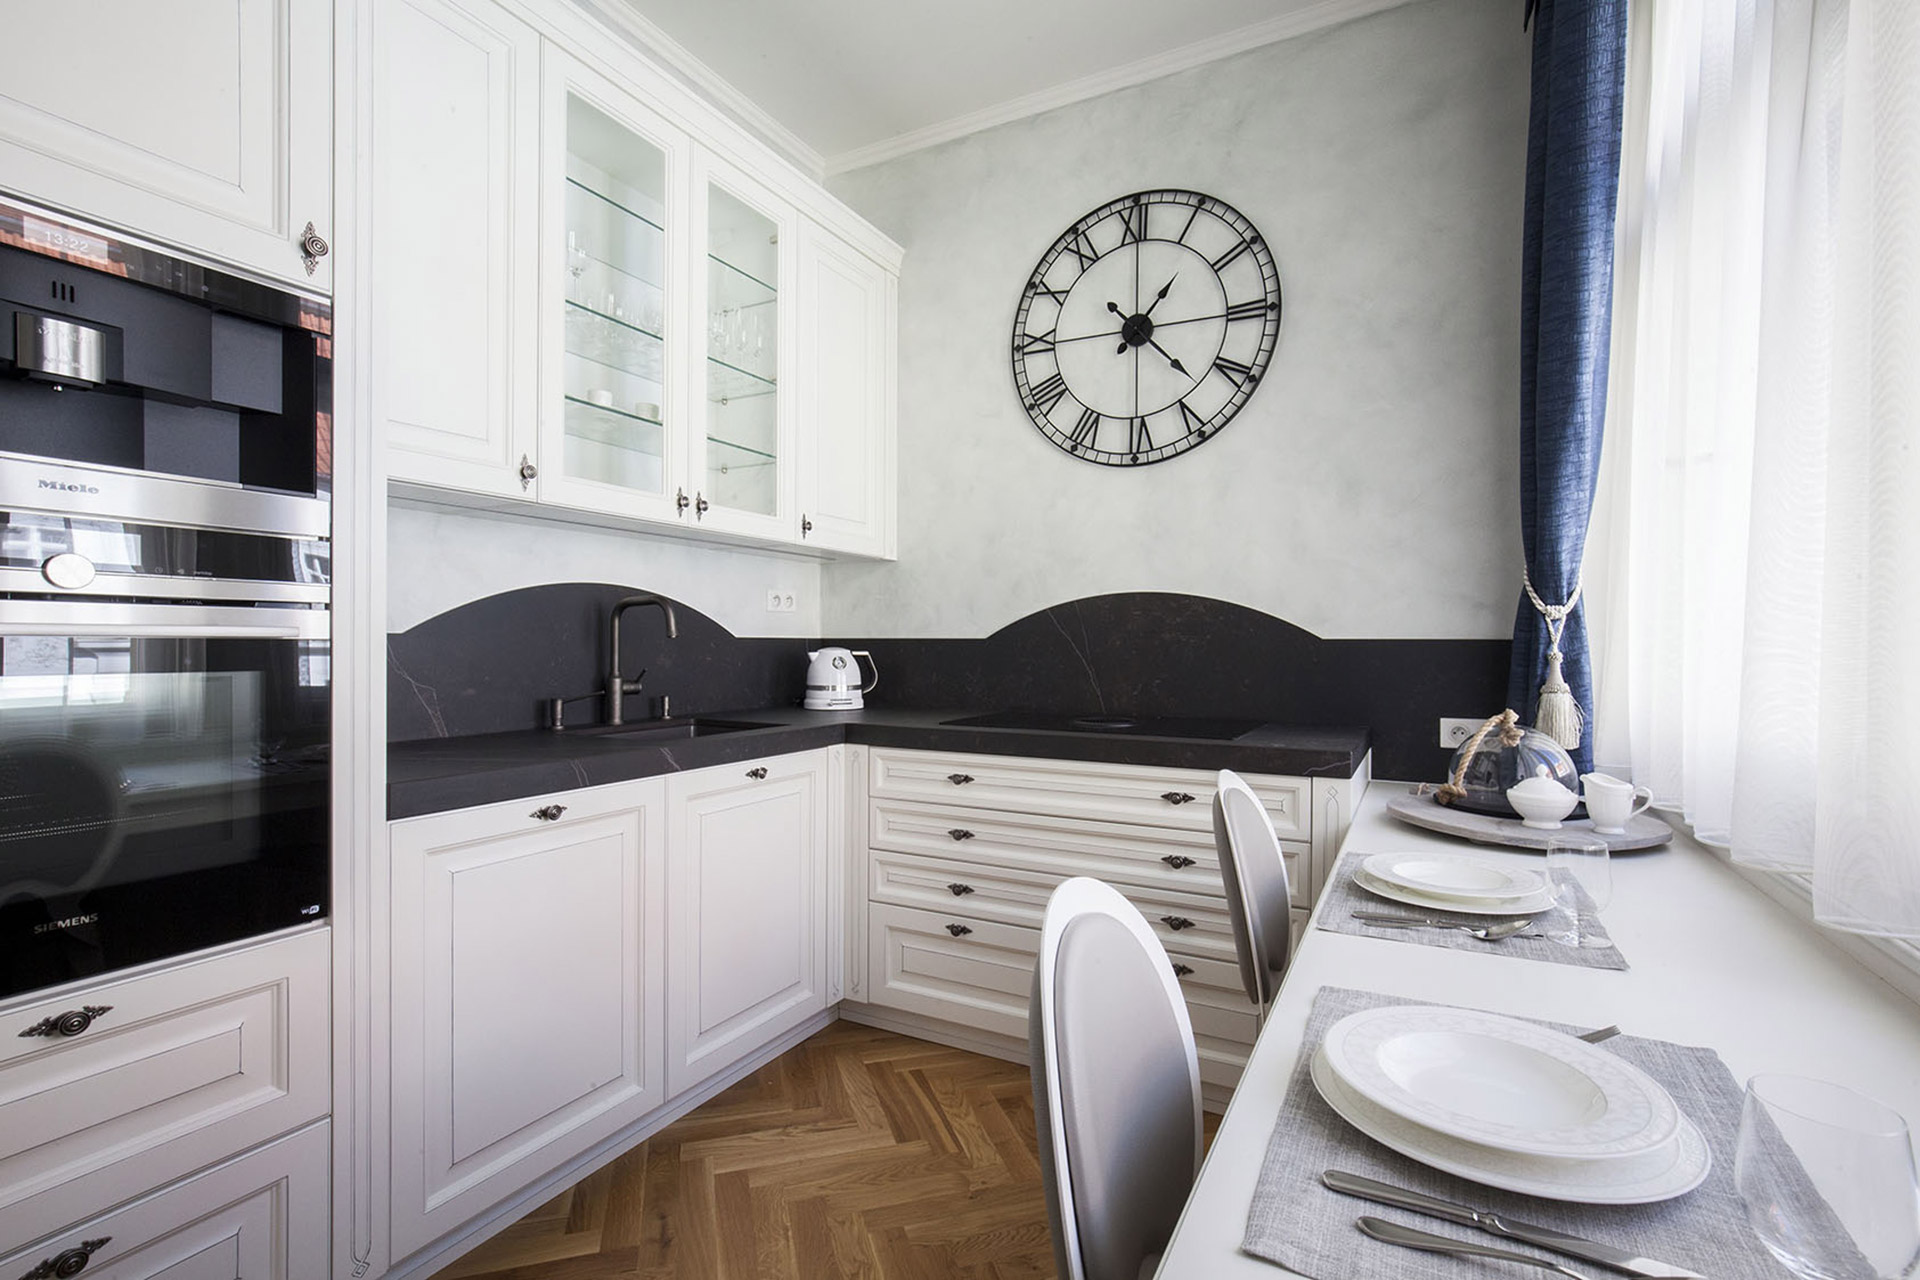 Hanák nábytek Realizace interiéru Rustikální styl Bílý lak patina